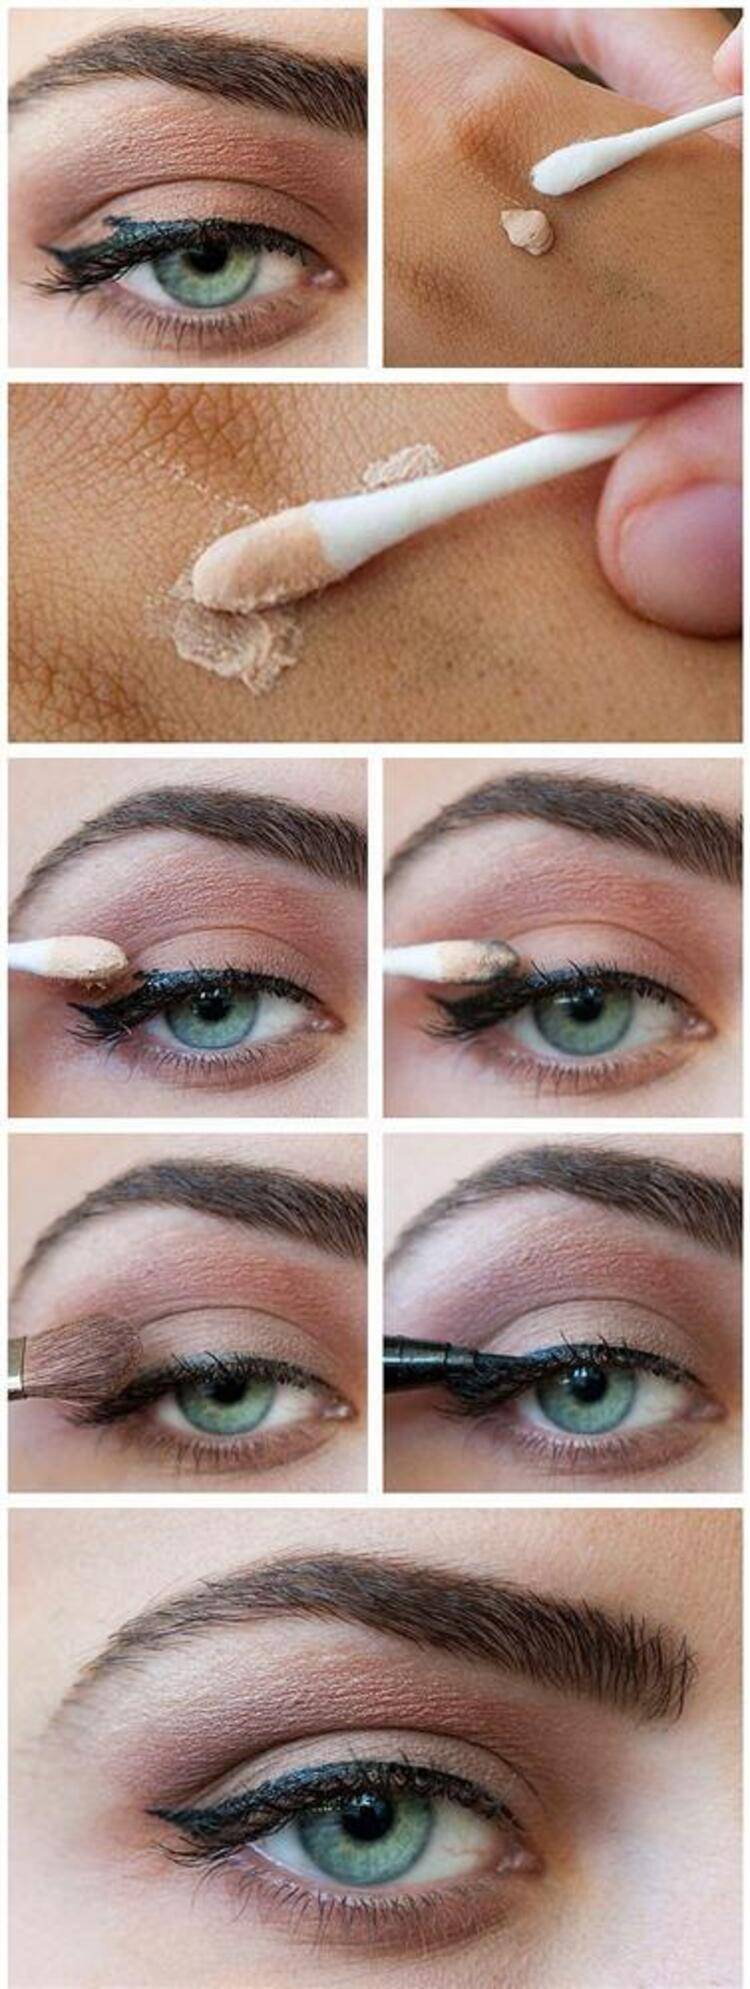 Как пользоваться белым карандашом для глаз фото пошагово